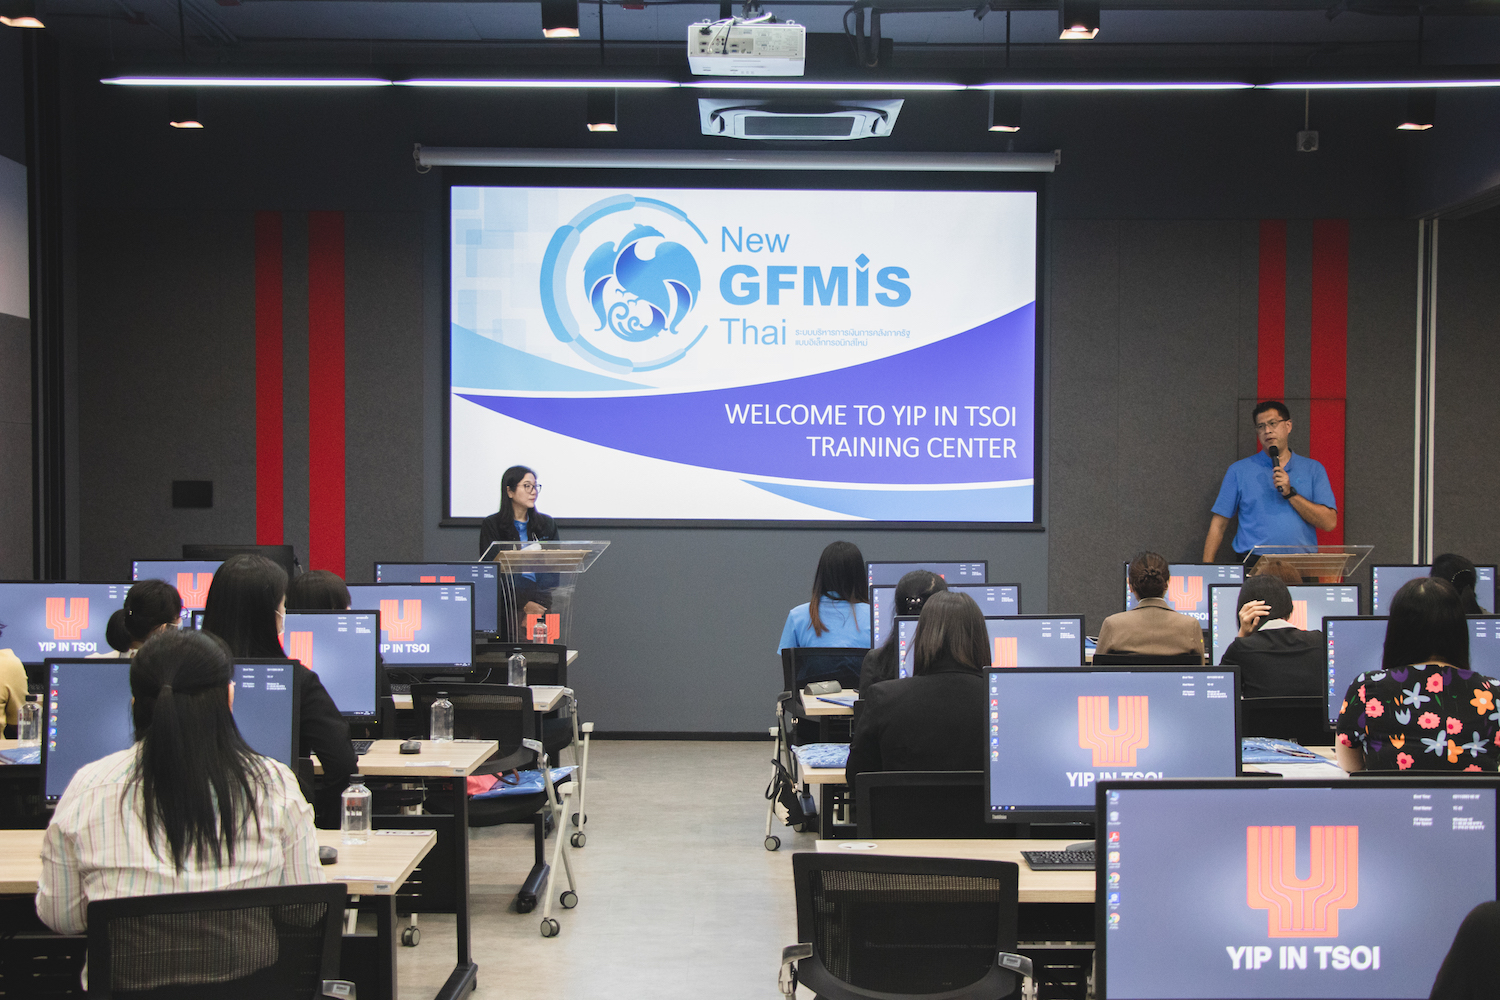 โครงการจัดทำระบบบริหารการเงินการคลังภาครัฐแบบอิเล็กทรอนิกส์ใหม่ (New GFMIS Thai)  มีการฝึกอบรมหลักสูตรการใช้งานระบบ New GFMIS  Thai สำหรับหน่วยเบิกจ่ายของส่วนราชการ  ให้กับหน่วยงานกลุ่มที่ 1 รุ่น 2